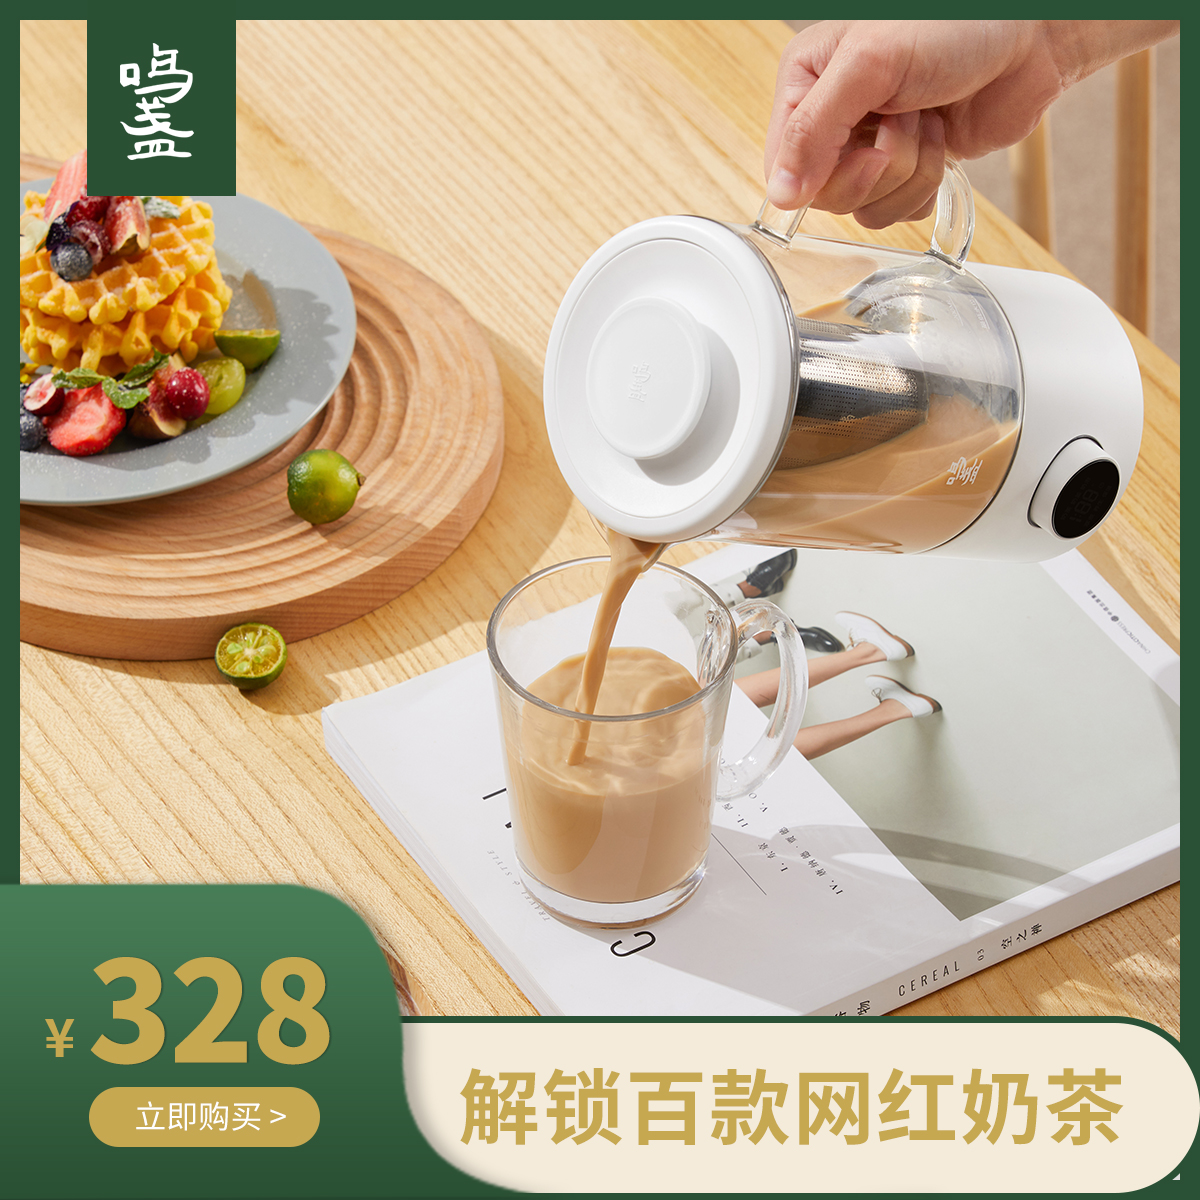 鸣盏奶茶机家用便携自动煮茶壶烧水养生壶办公室多功能小型煮茶器